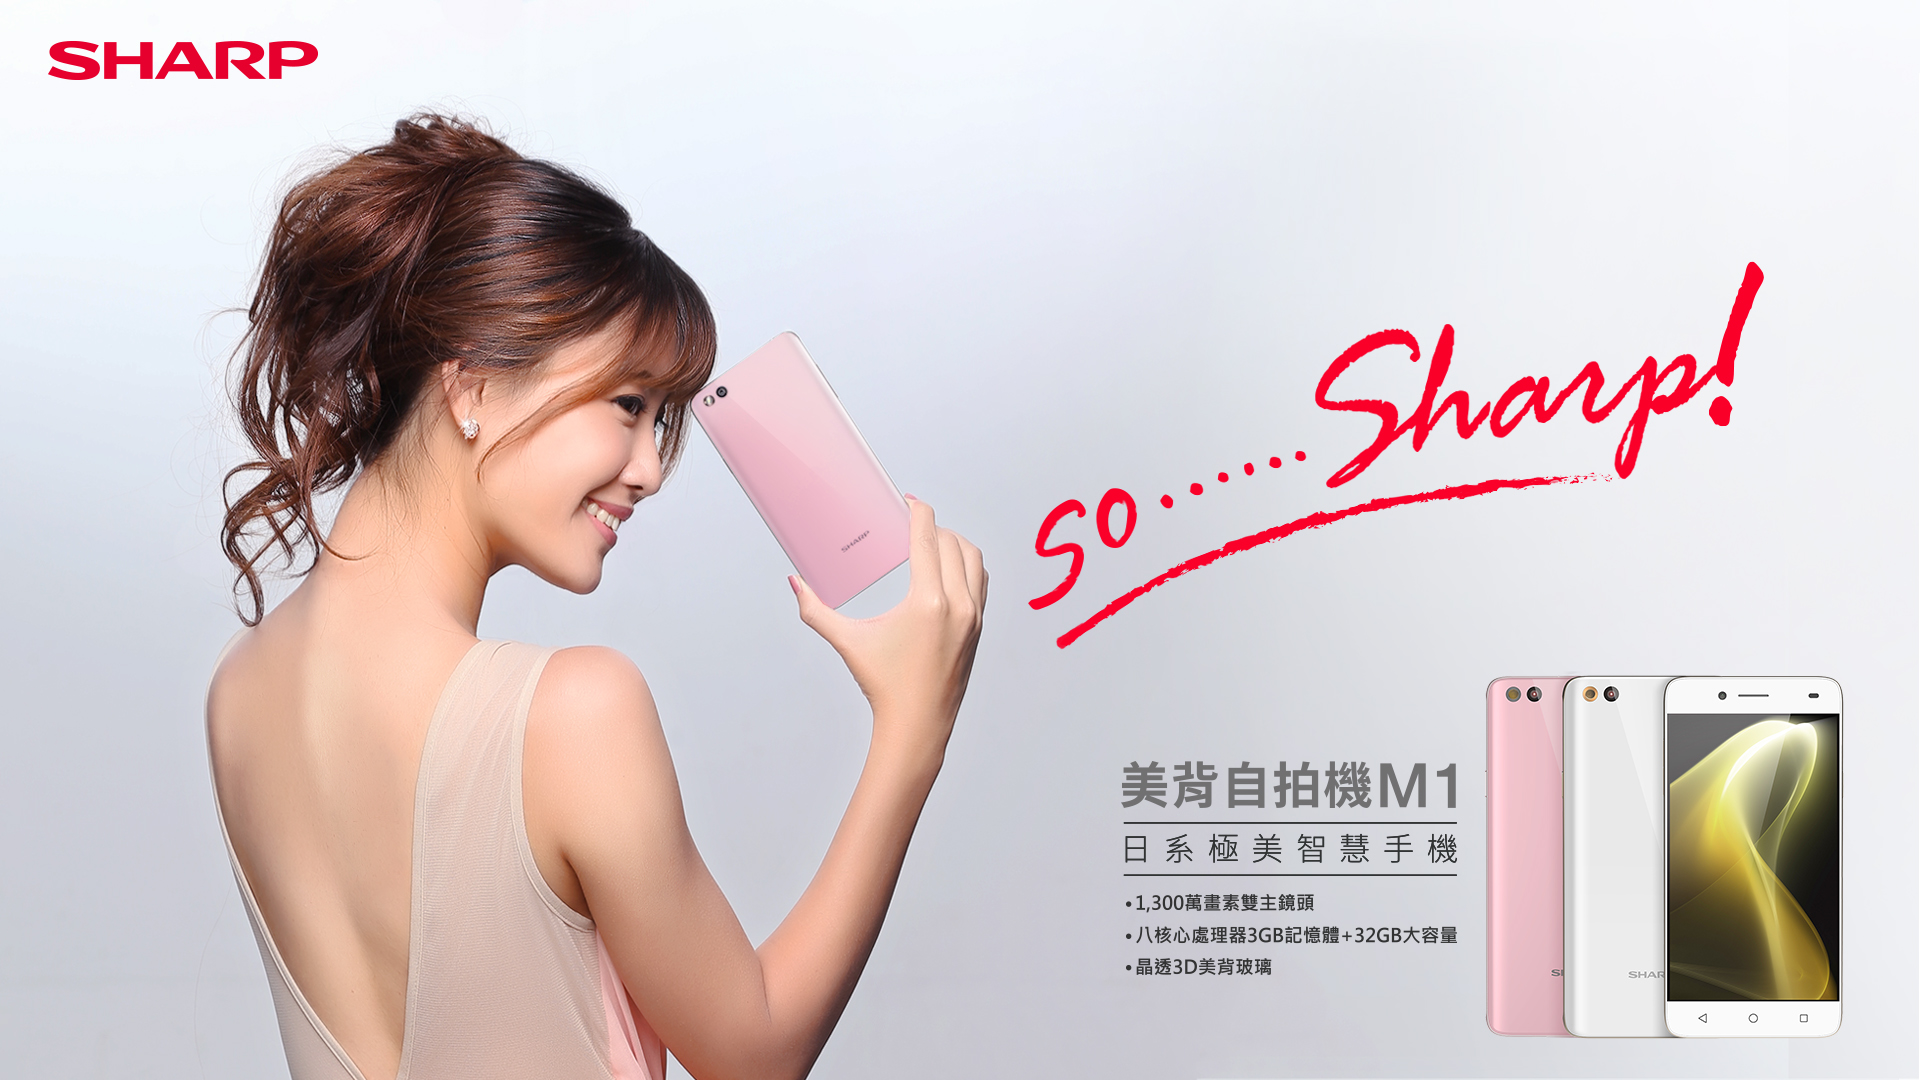 JMJ國際模特兒娛樂經紀-SHARP M1平面廣告拍攝